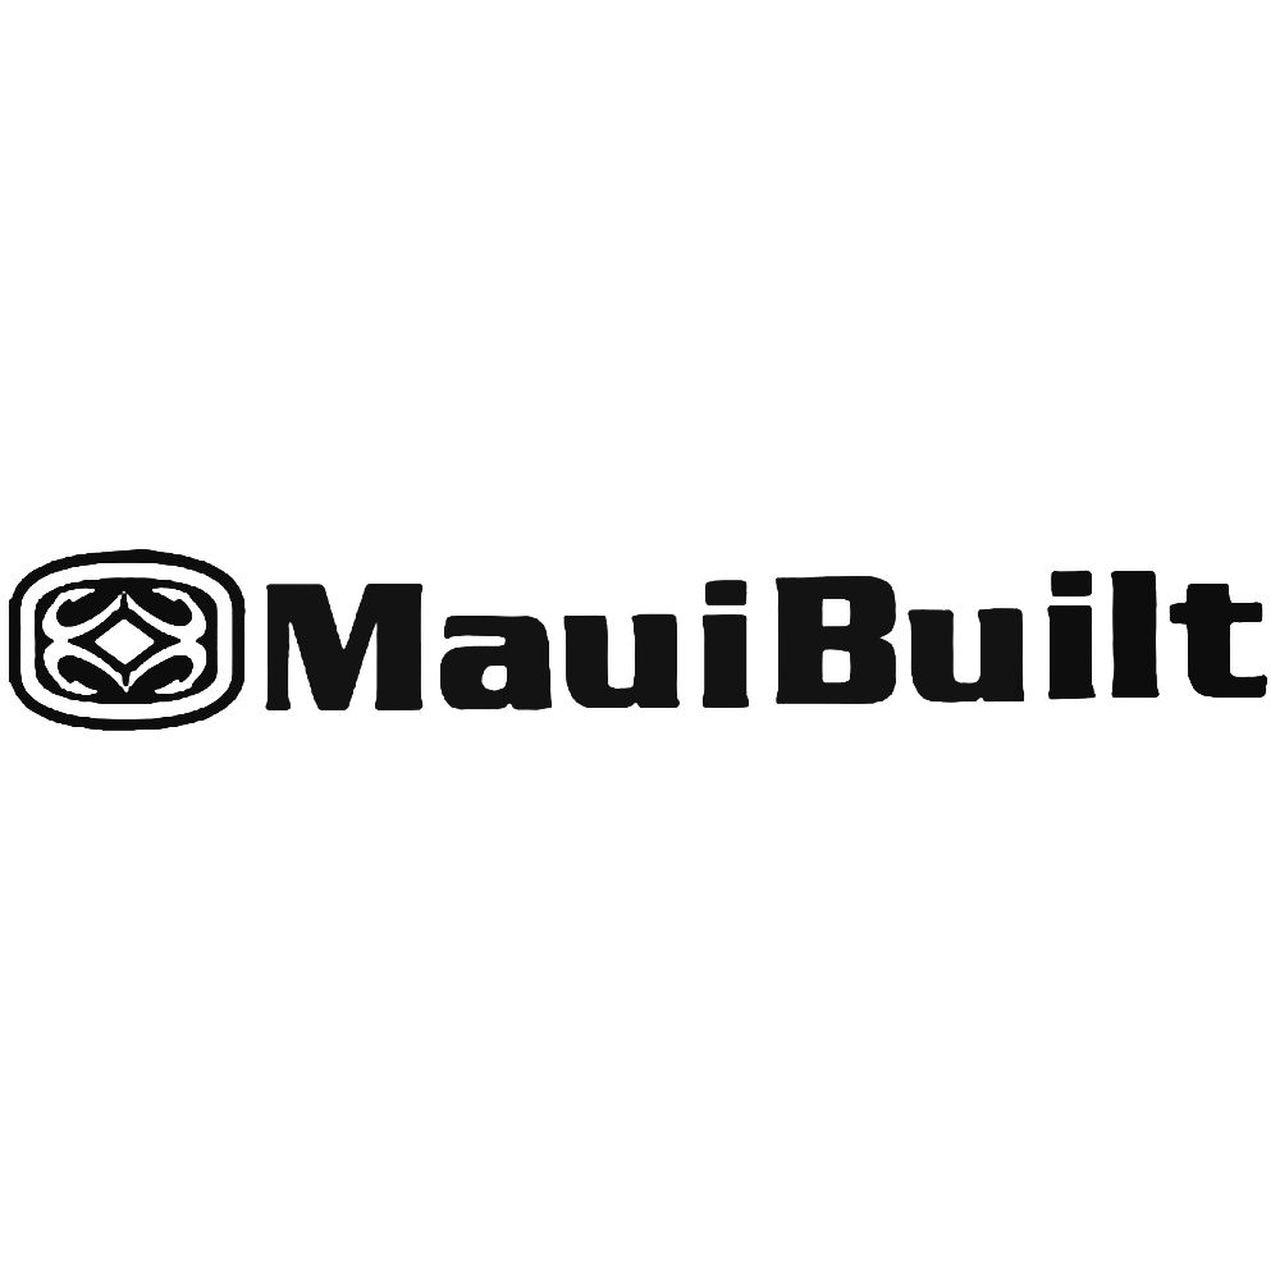 Maui Logo - Maui Built Logo 3 Vinyl Decal Sticker